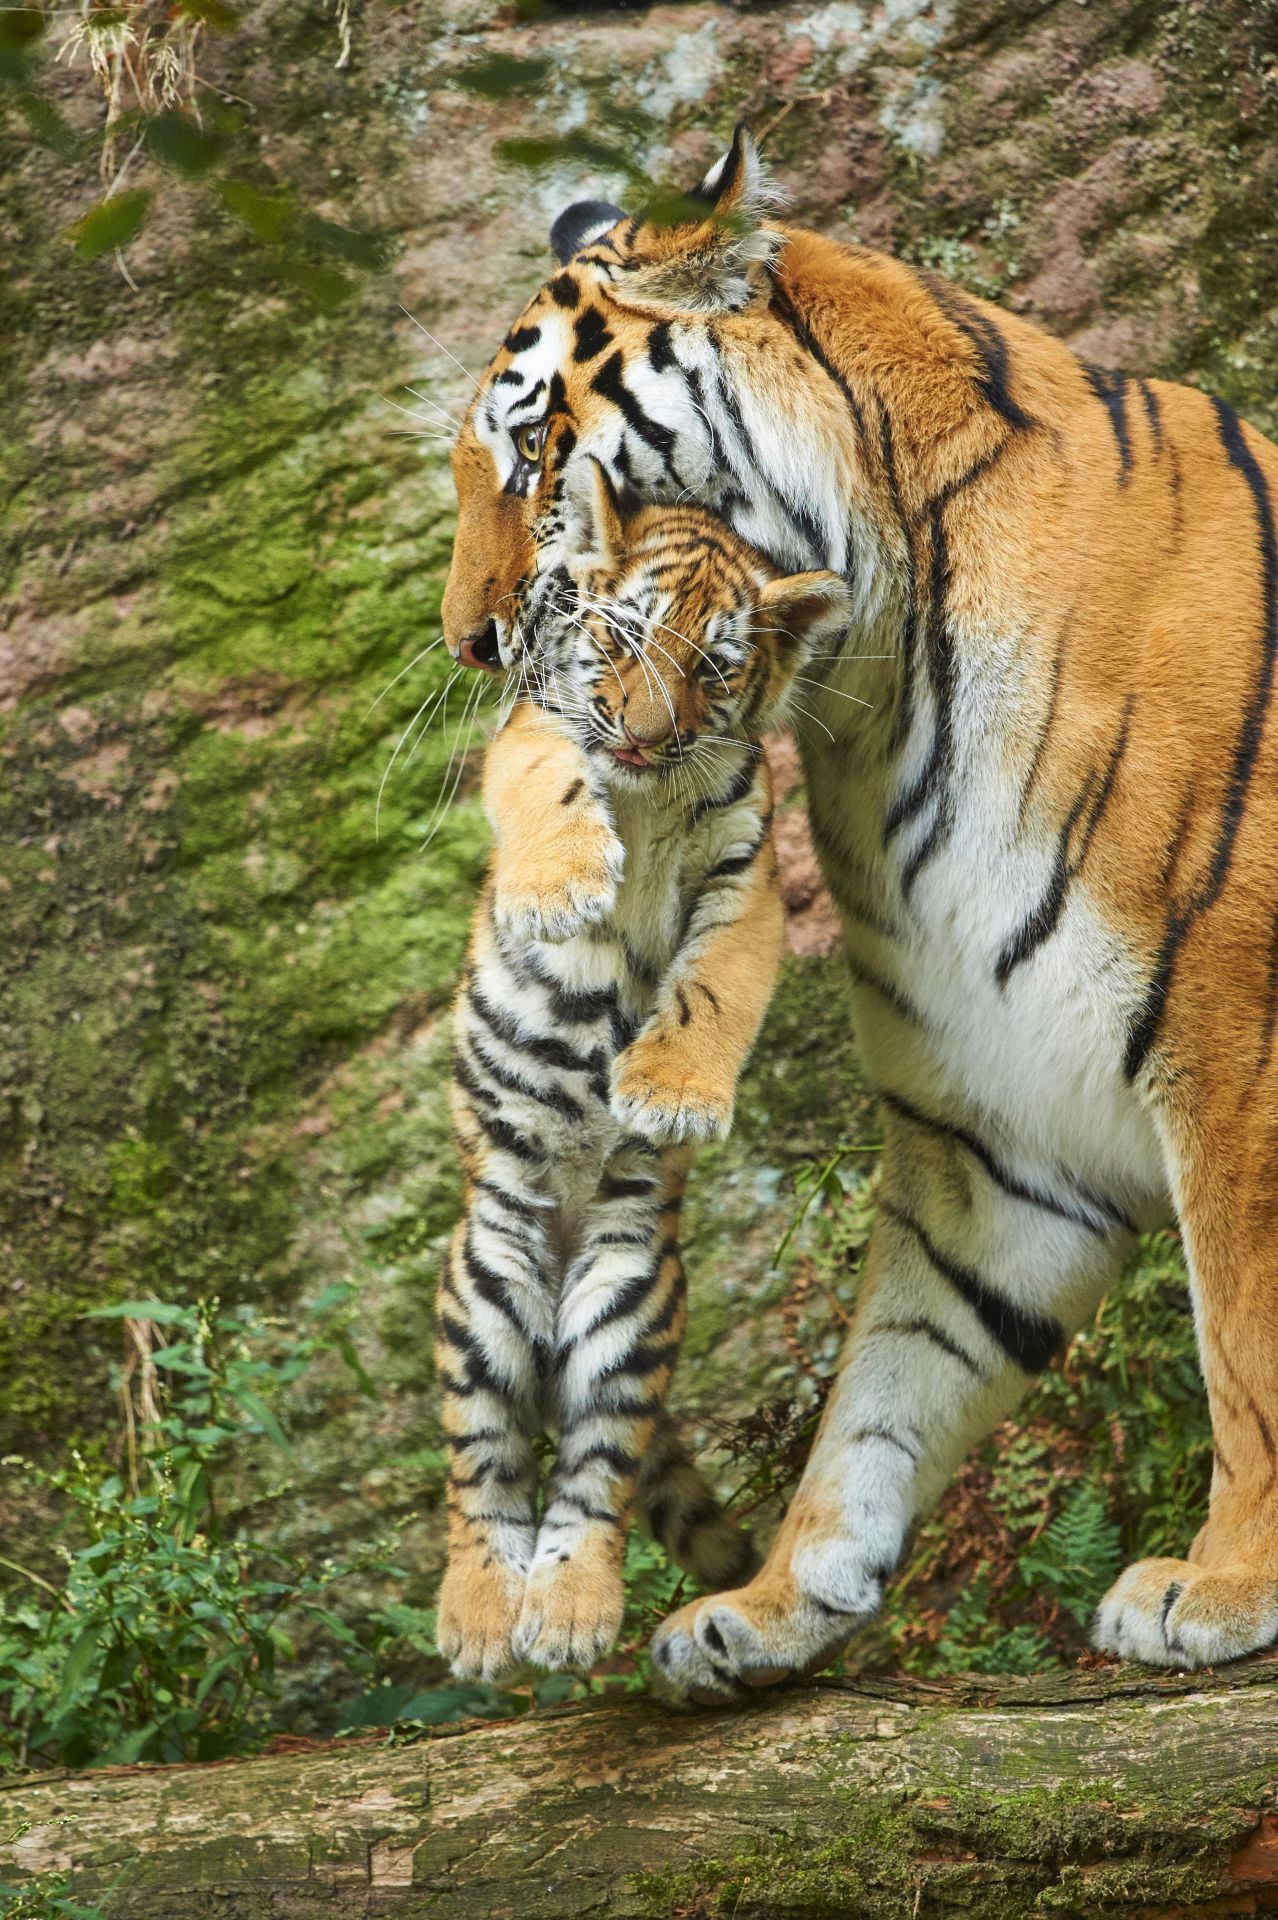 Für diese Tigermutter trägt sich das Baby dank Trage-Starre wesentlich leichter.